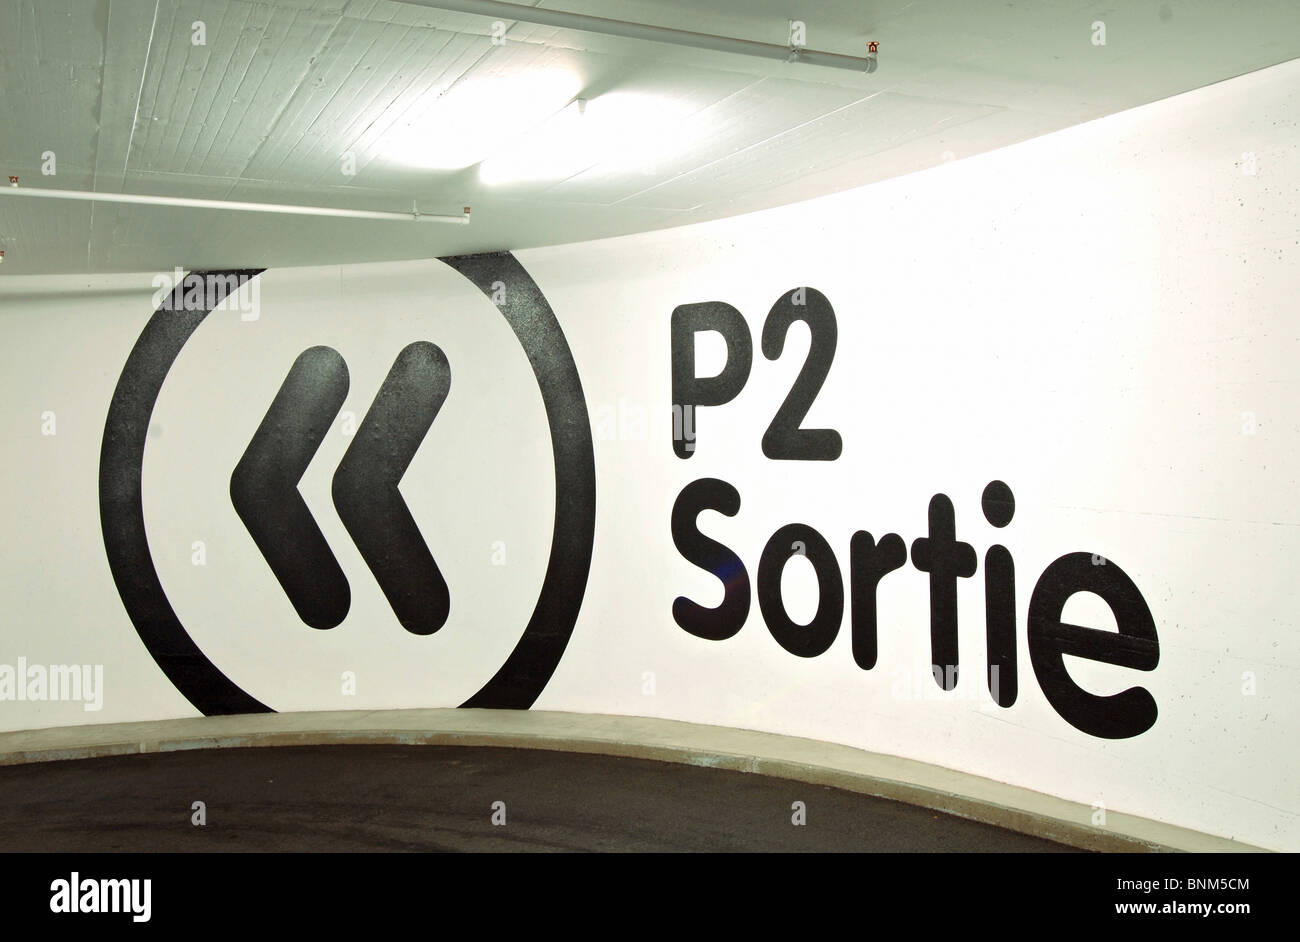 Estacionamiento de varios pisos logotipo símbolo de salida Konzeptt marca, signo de escritura escritura Foto de stock